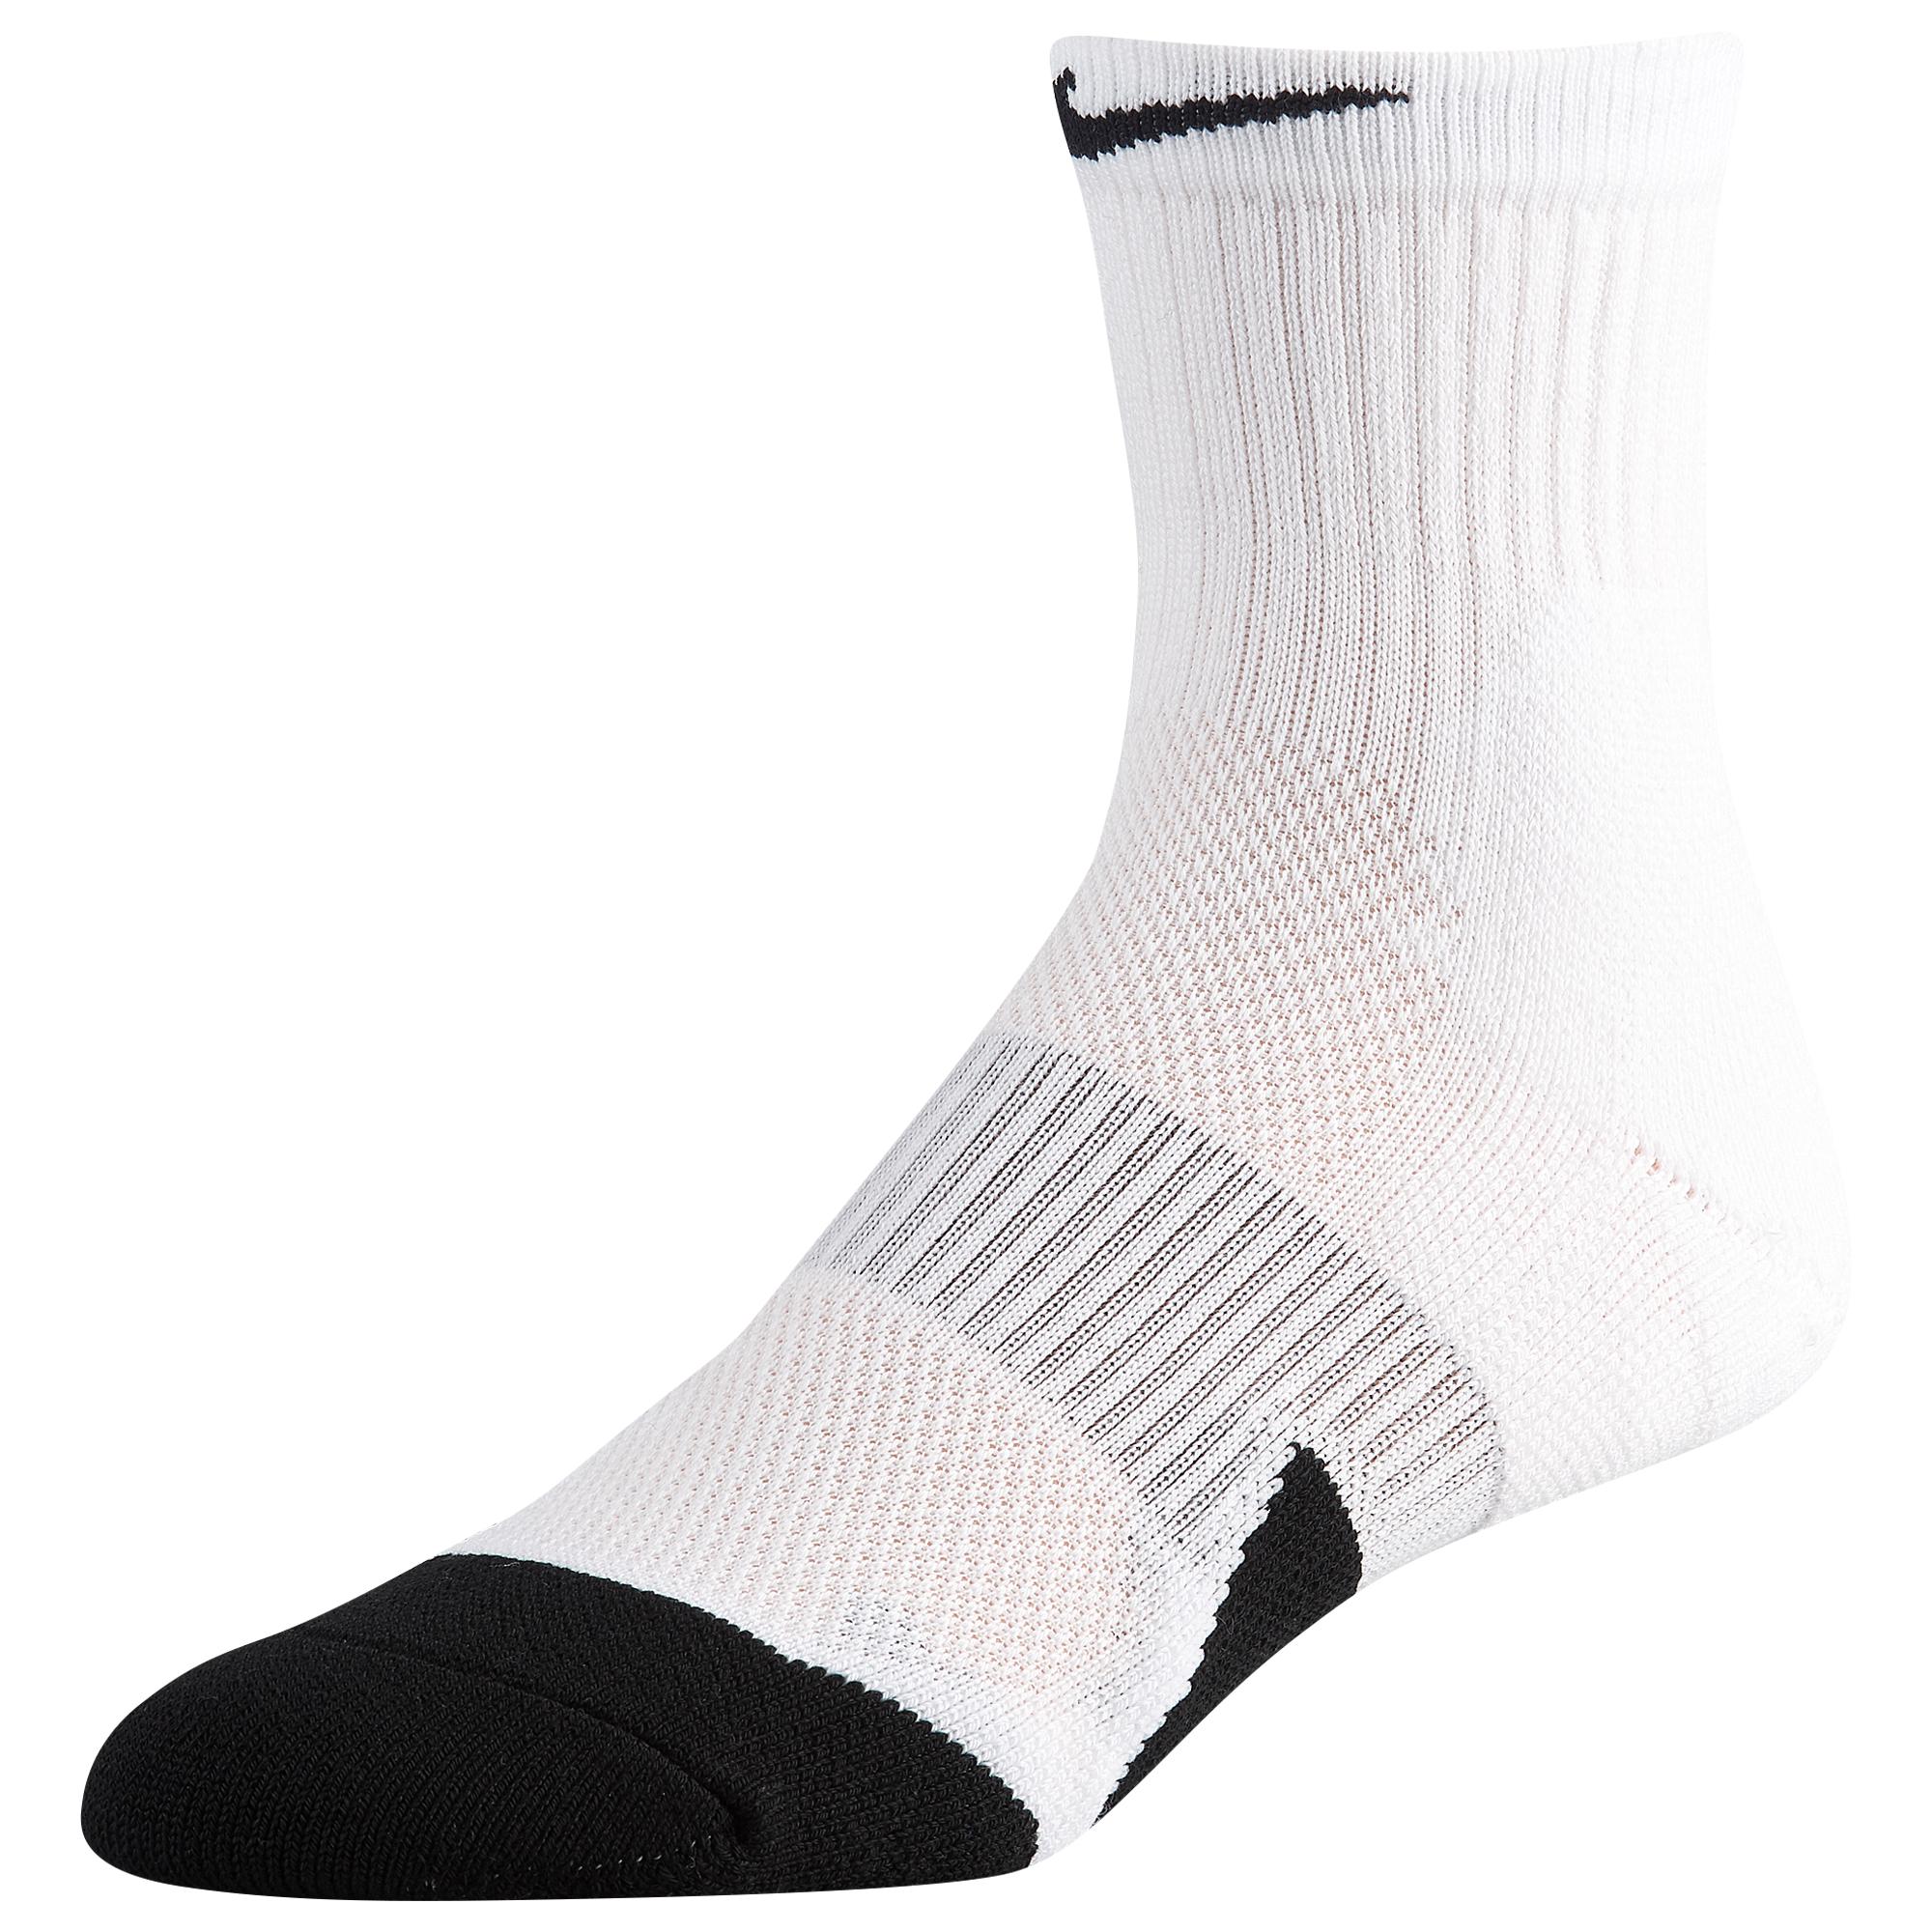 Nike Elite 1.5 Basketball Mid Socks in White/Black (White) for Men - Lyst